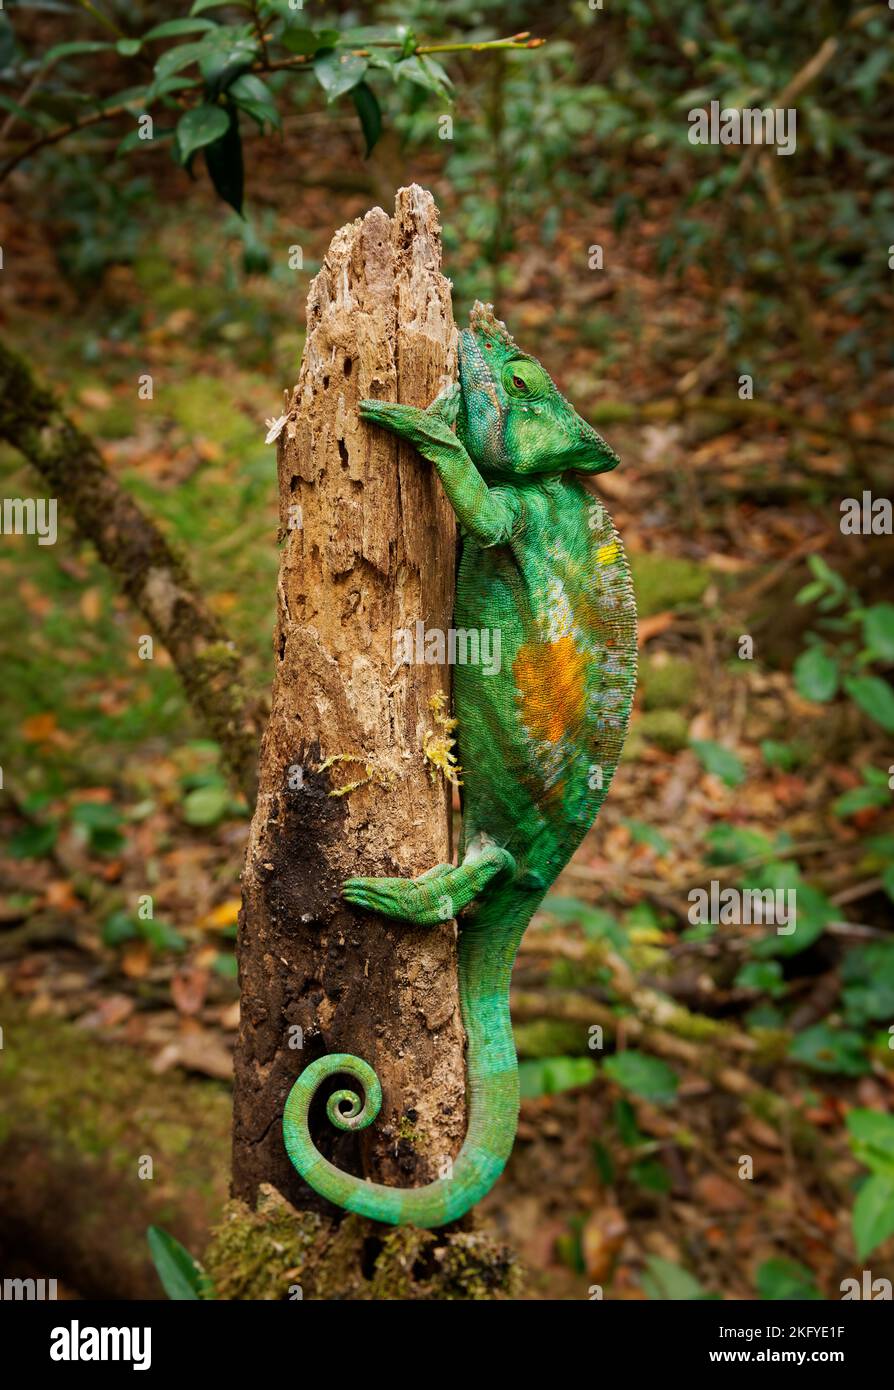 Camaleón de Parson - Chamaeleo (Calumma) parsonii Gran especie verde de camaleón en Chamaeleonidae, endémica de bosque primario húmedo en el este y el n Foto de stock